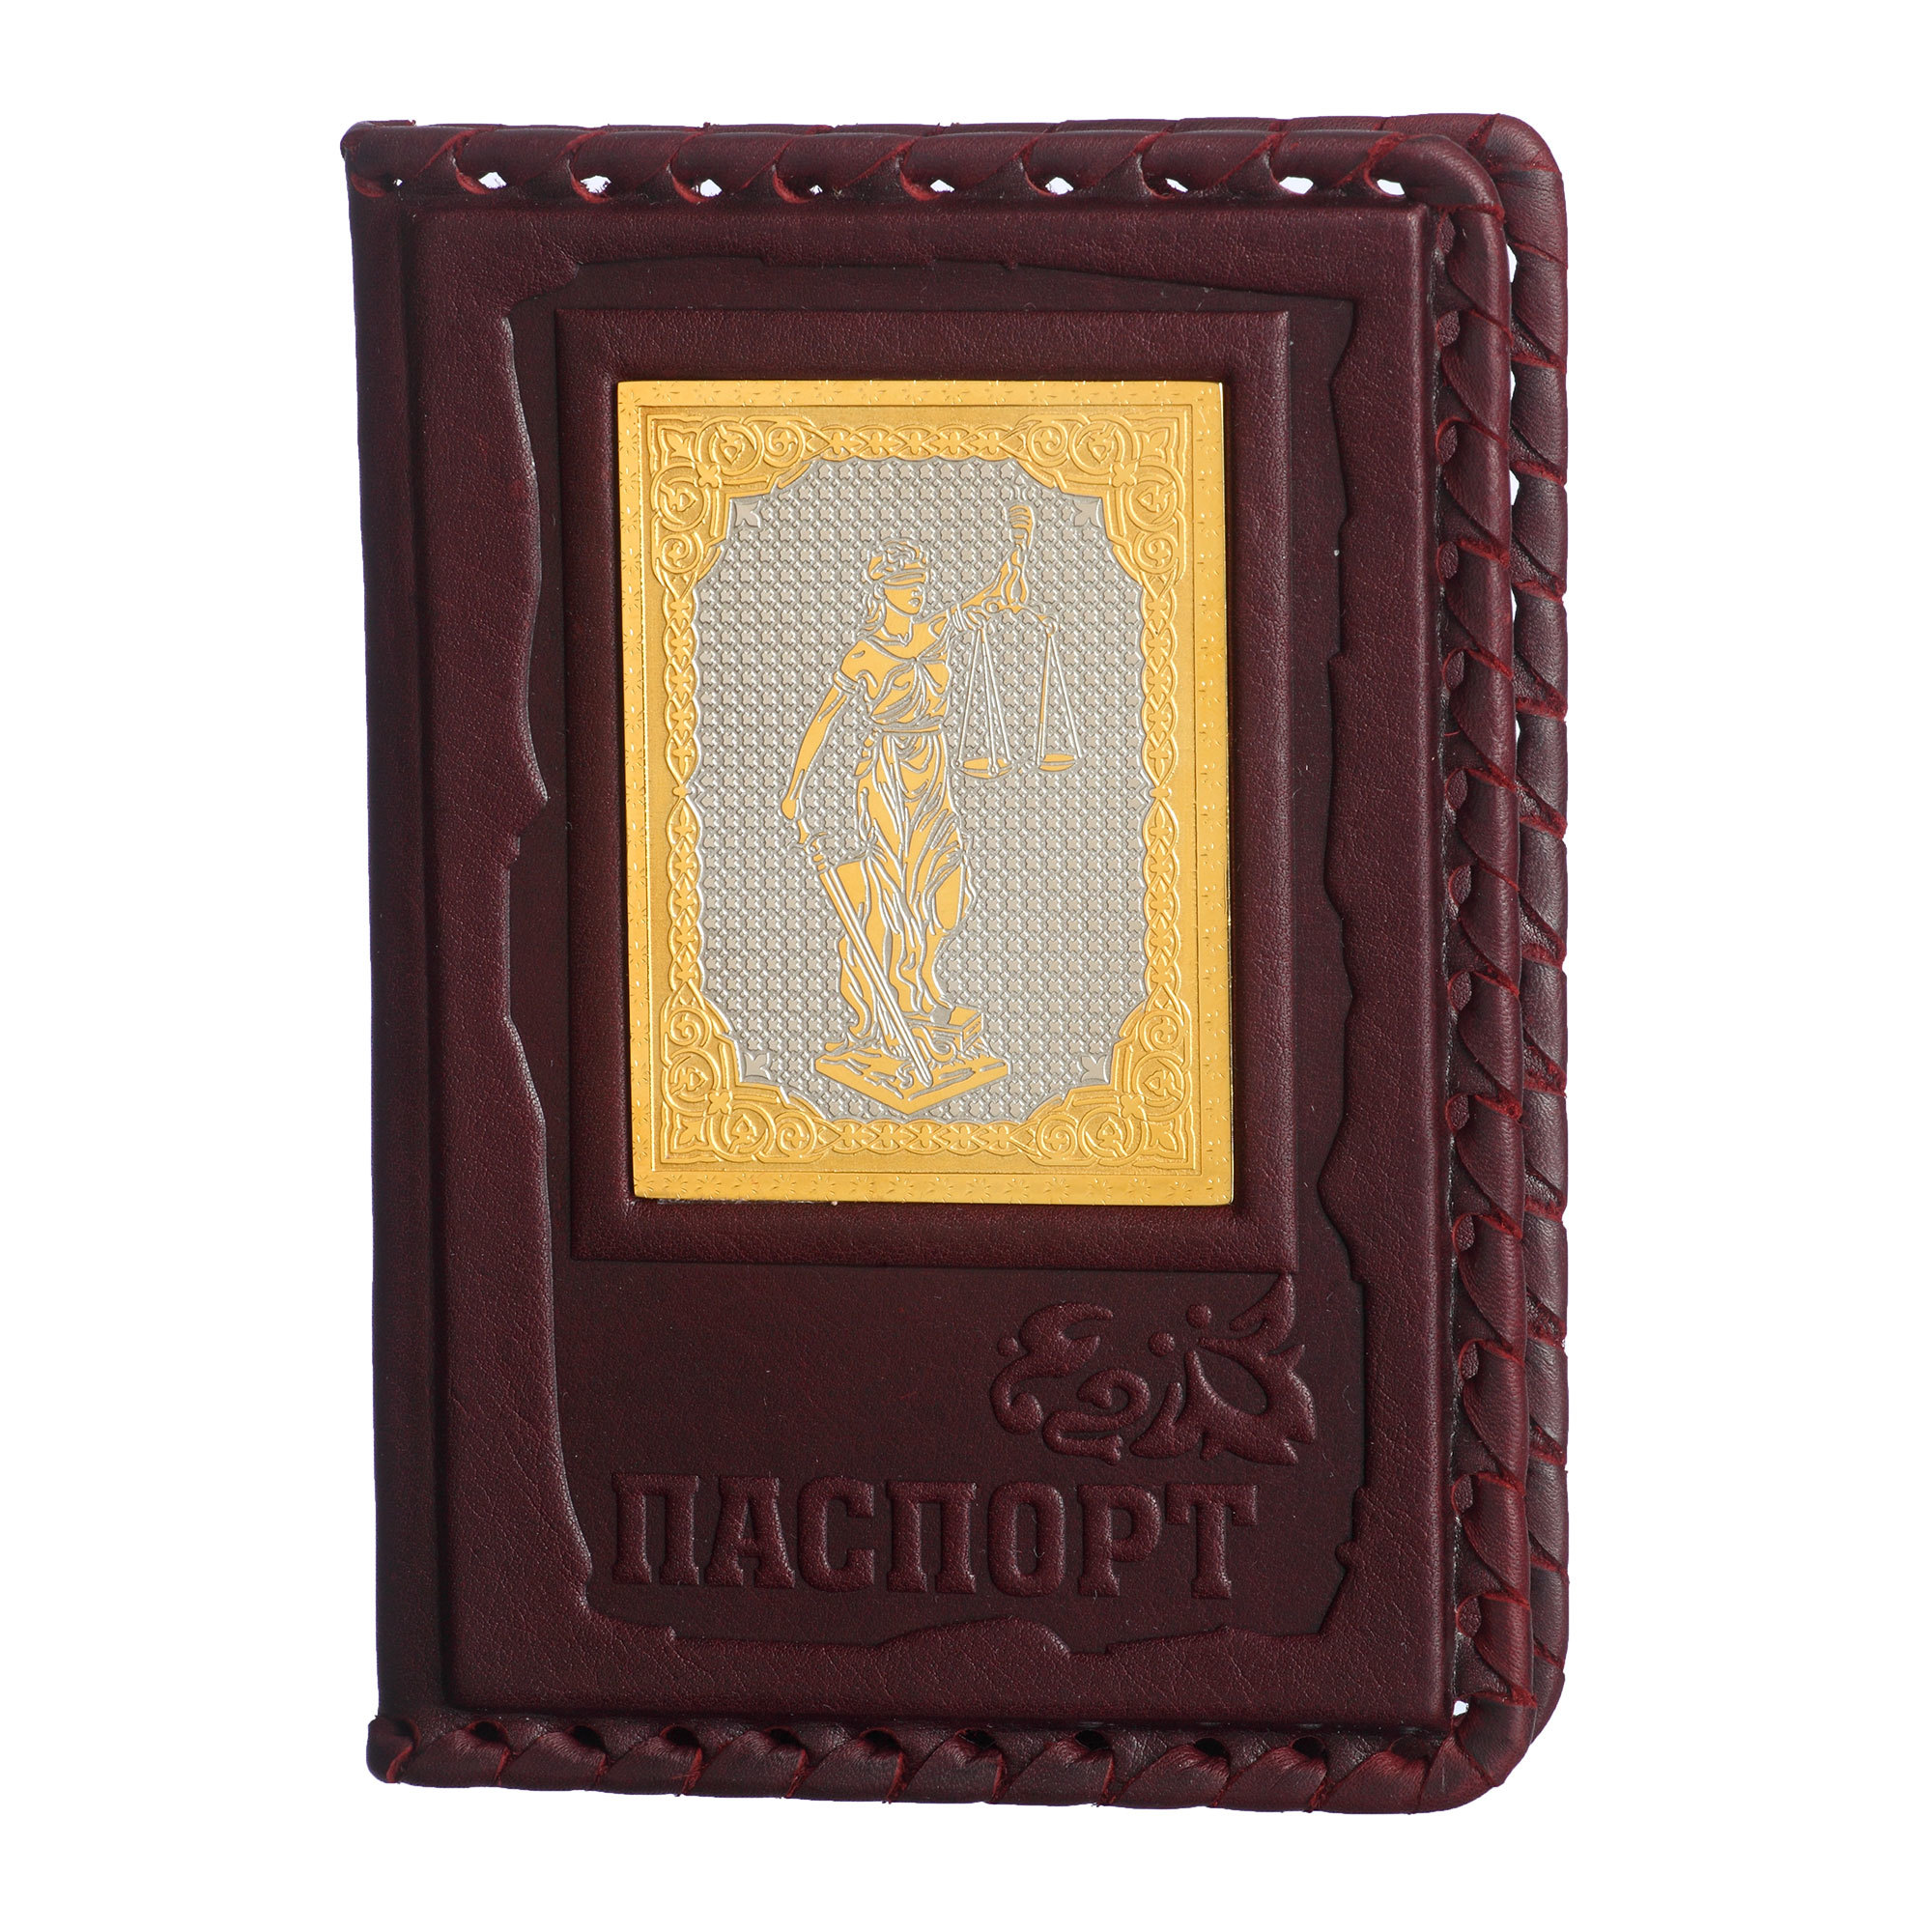 Обложка для паспорта Фемида-3 с накладкой покрытой золотом 999 пробы 009-14-61-1 